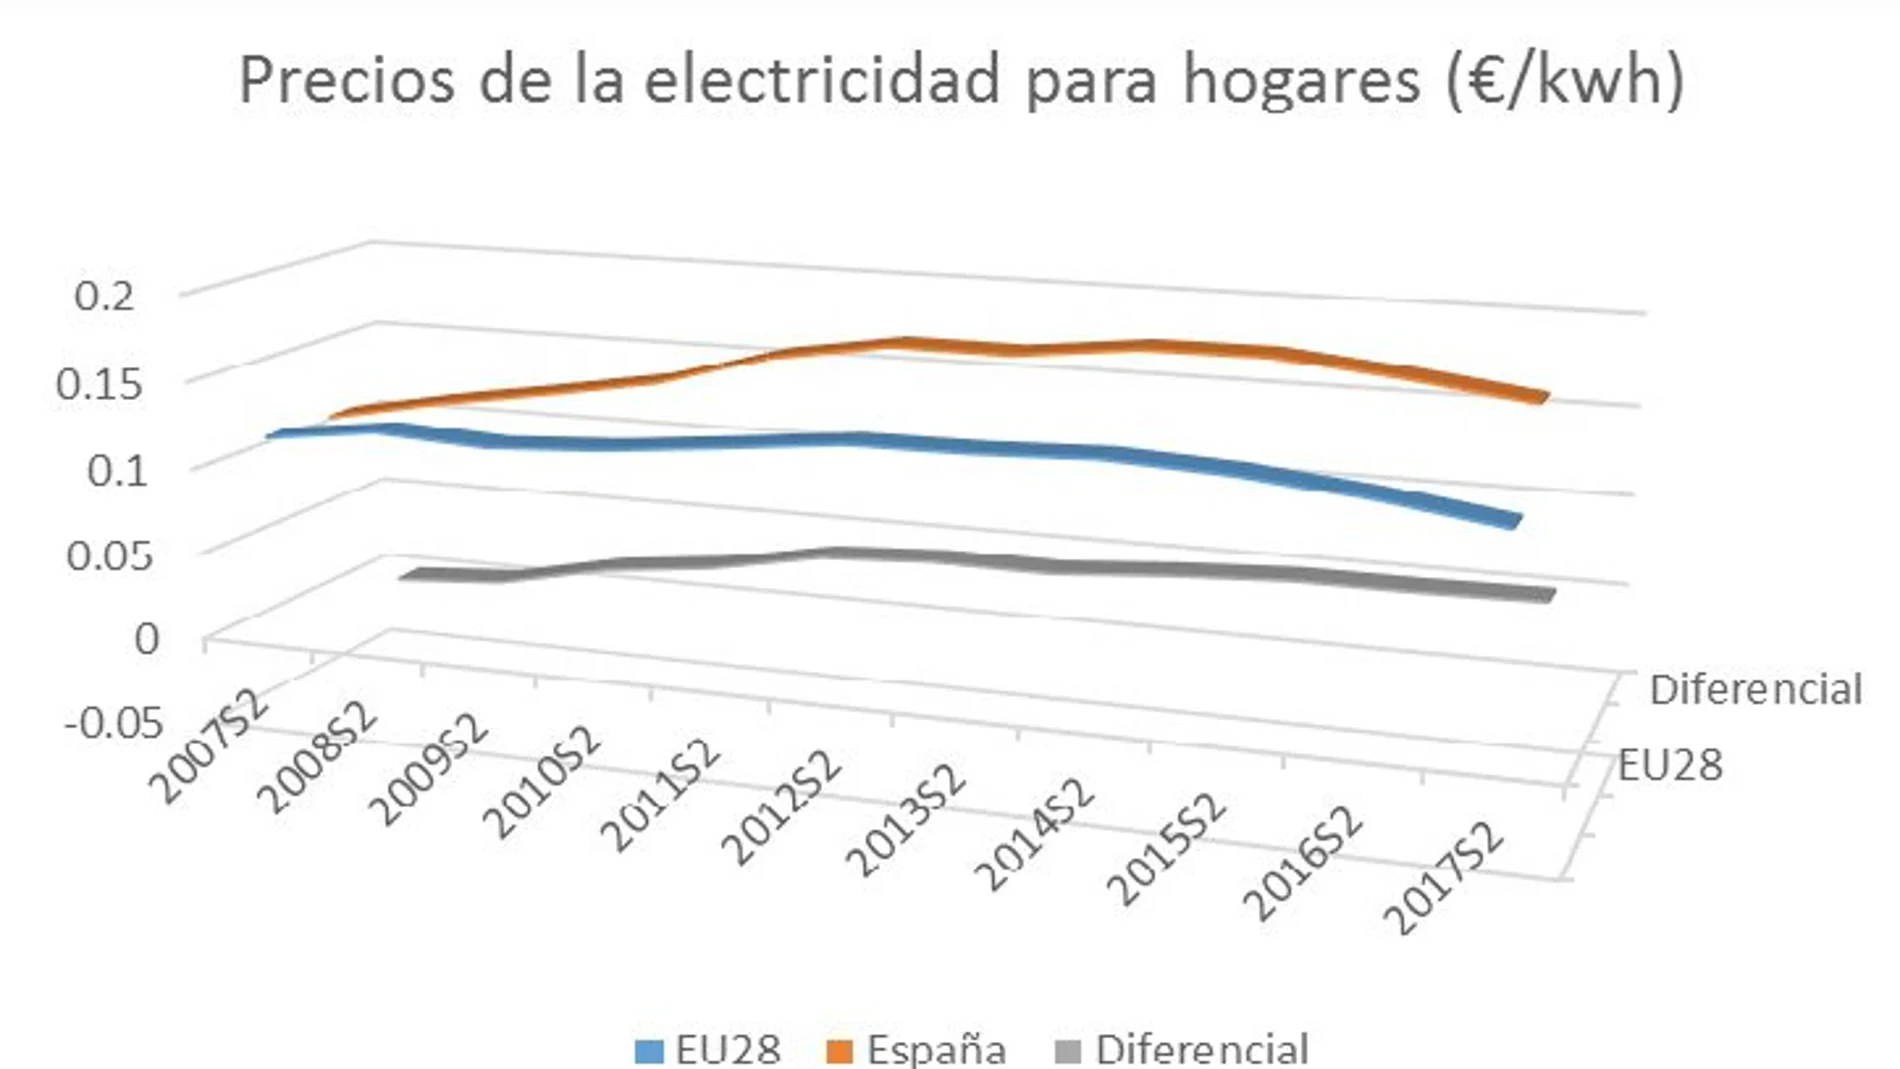 A pesar de la creciente participación de las energías renovables en la generación eléctrica, España sigue manteniendo un nada despreciable diferencial con la media de la Unión Europea